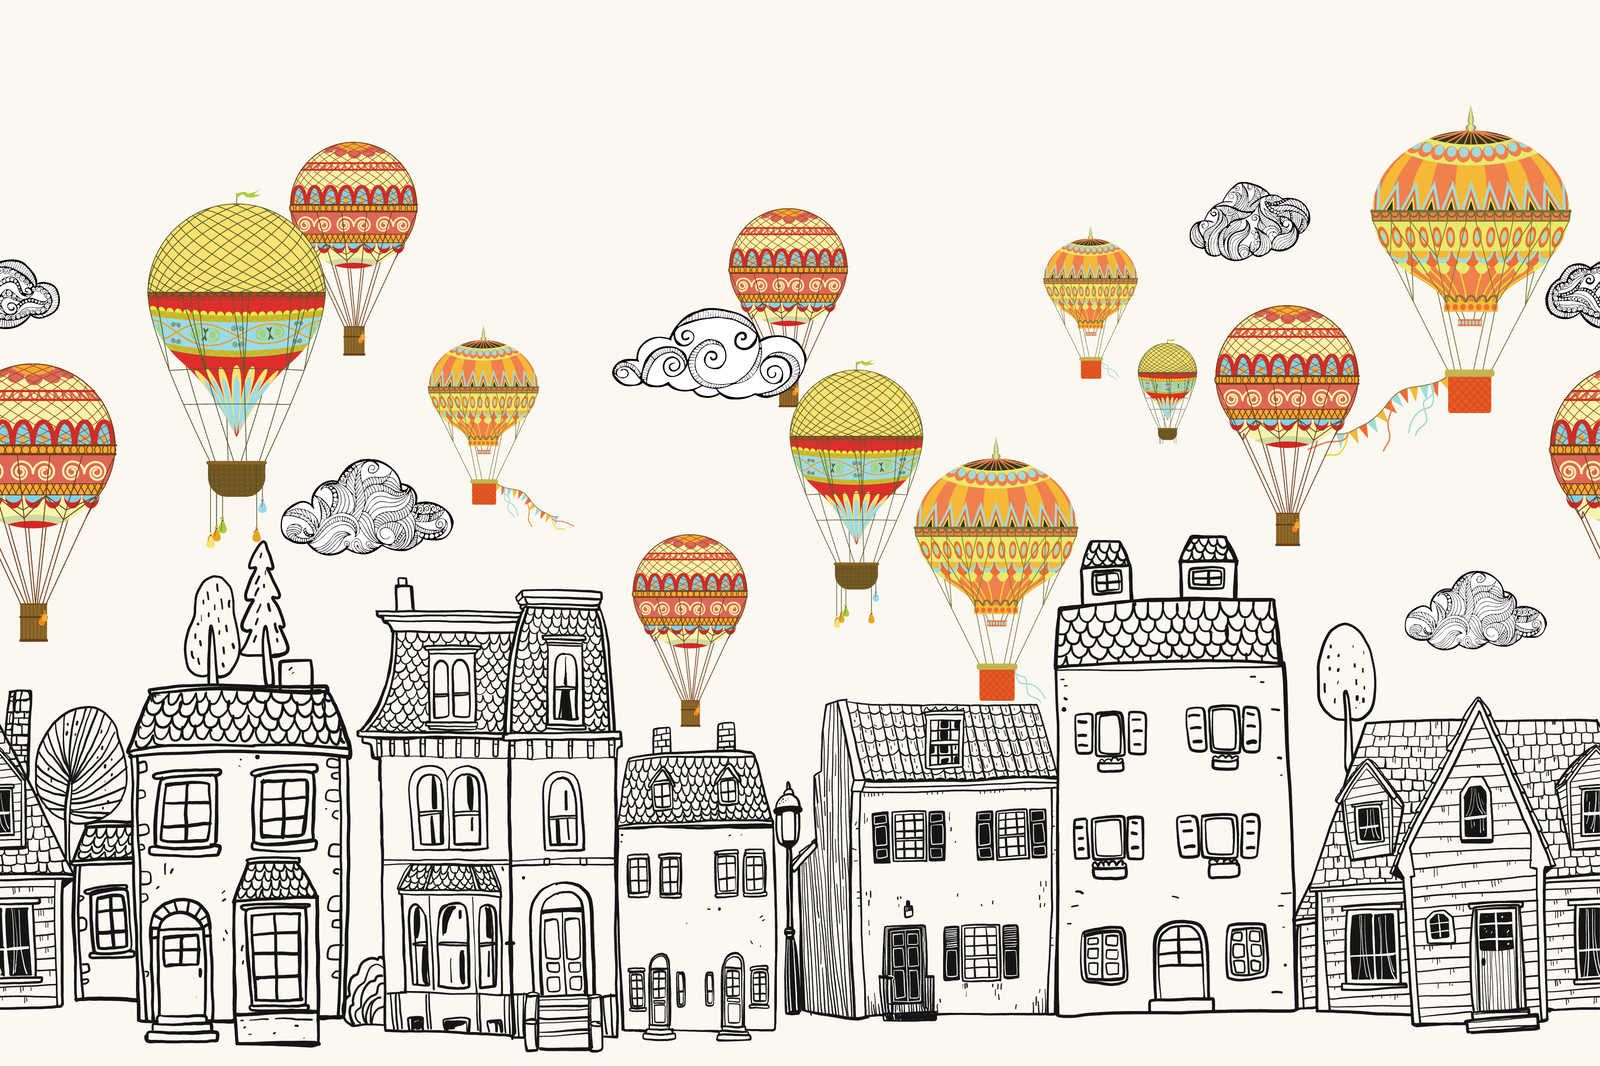             Canvas Kleine stad met luchtballonnen - 90 cm x 60 cm
        